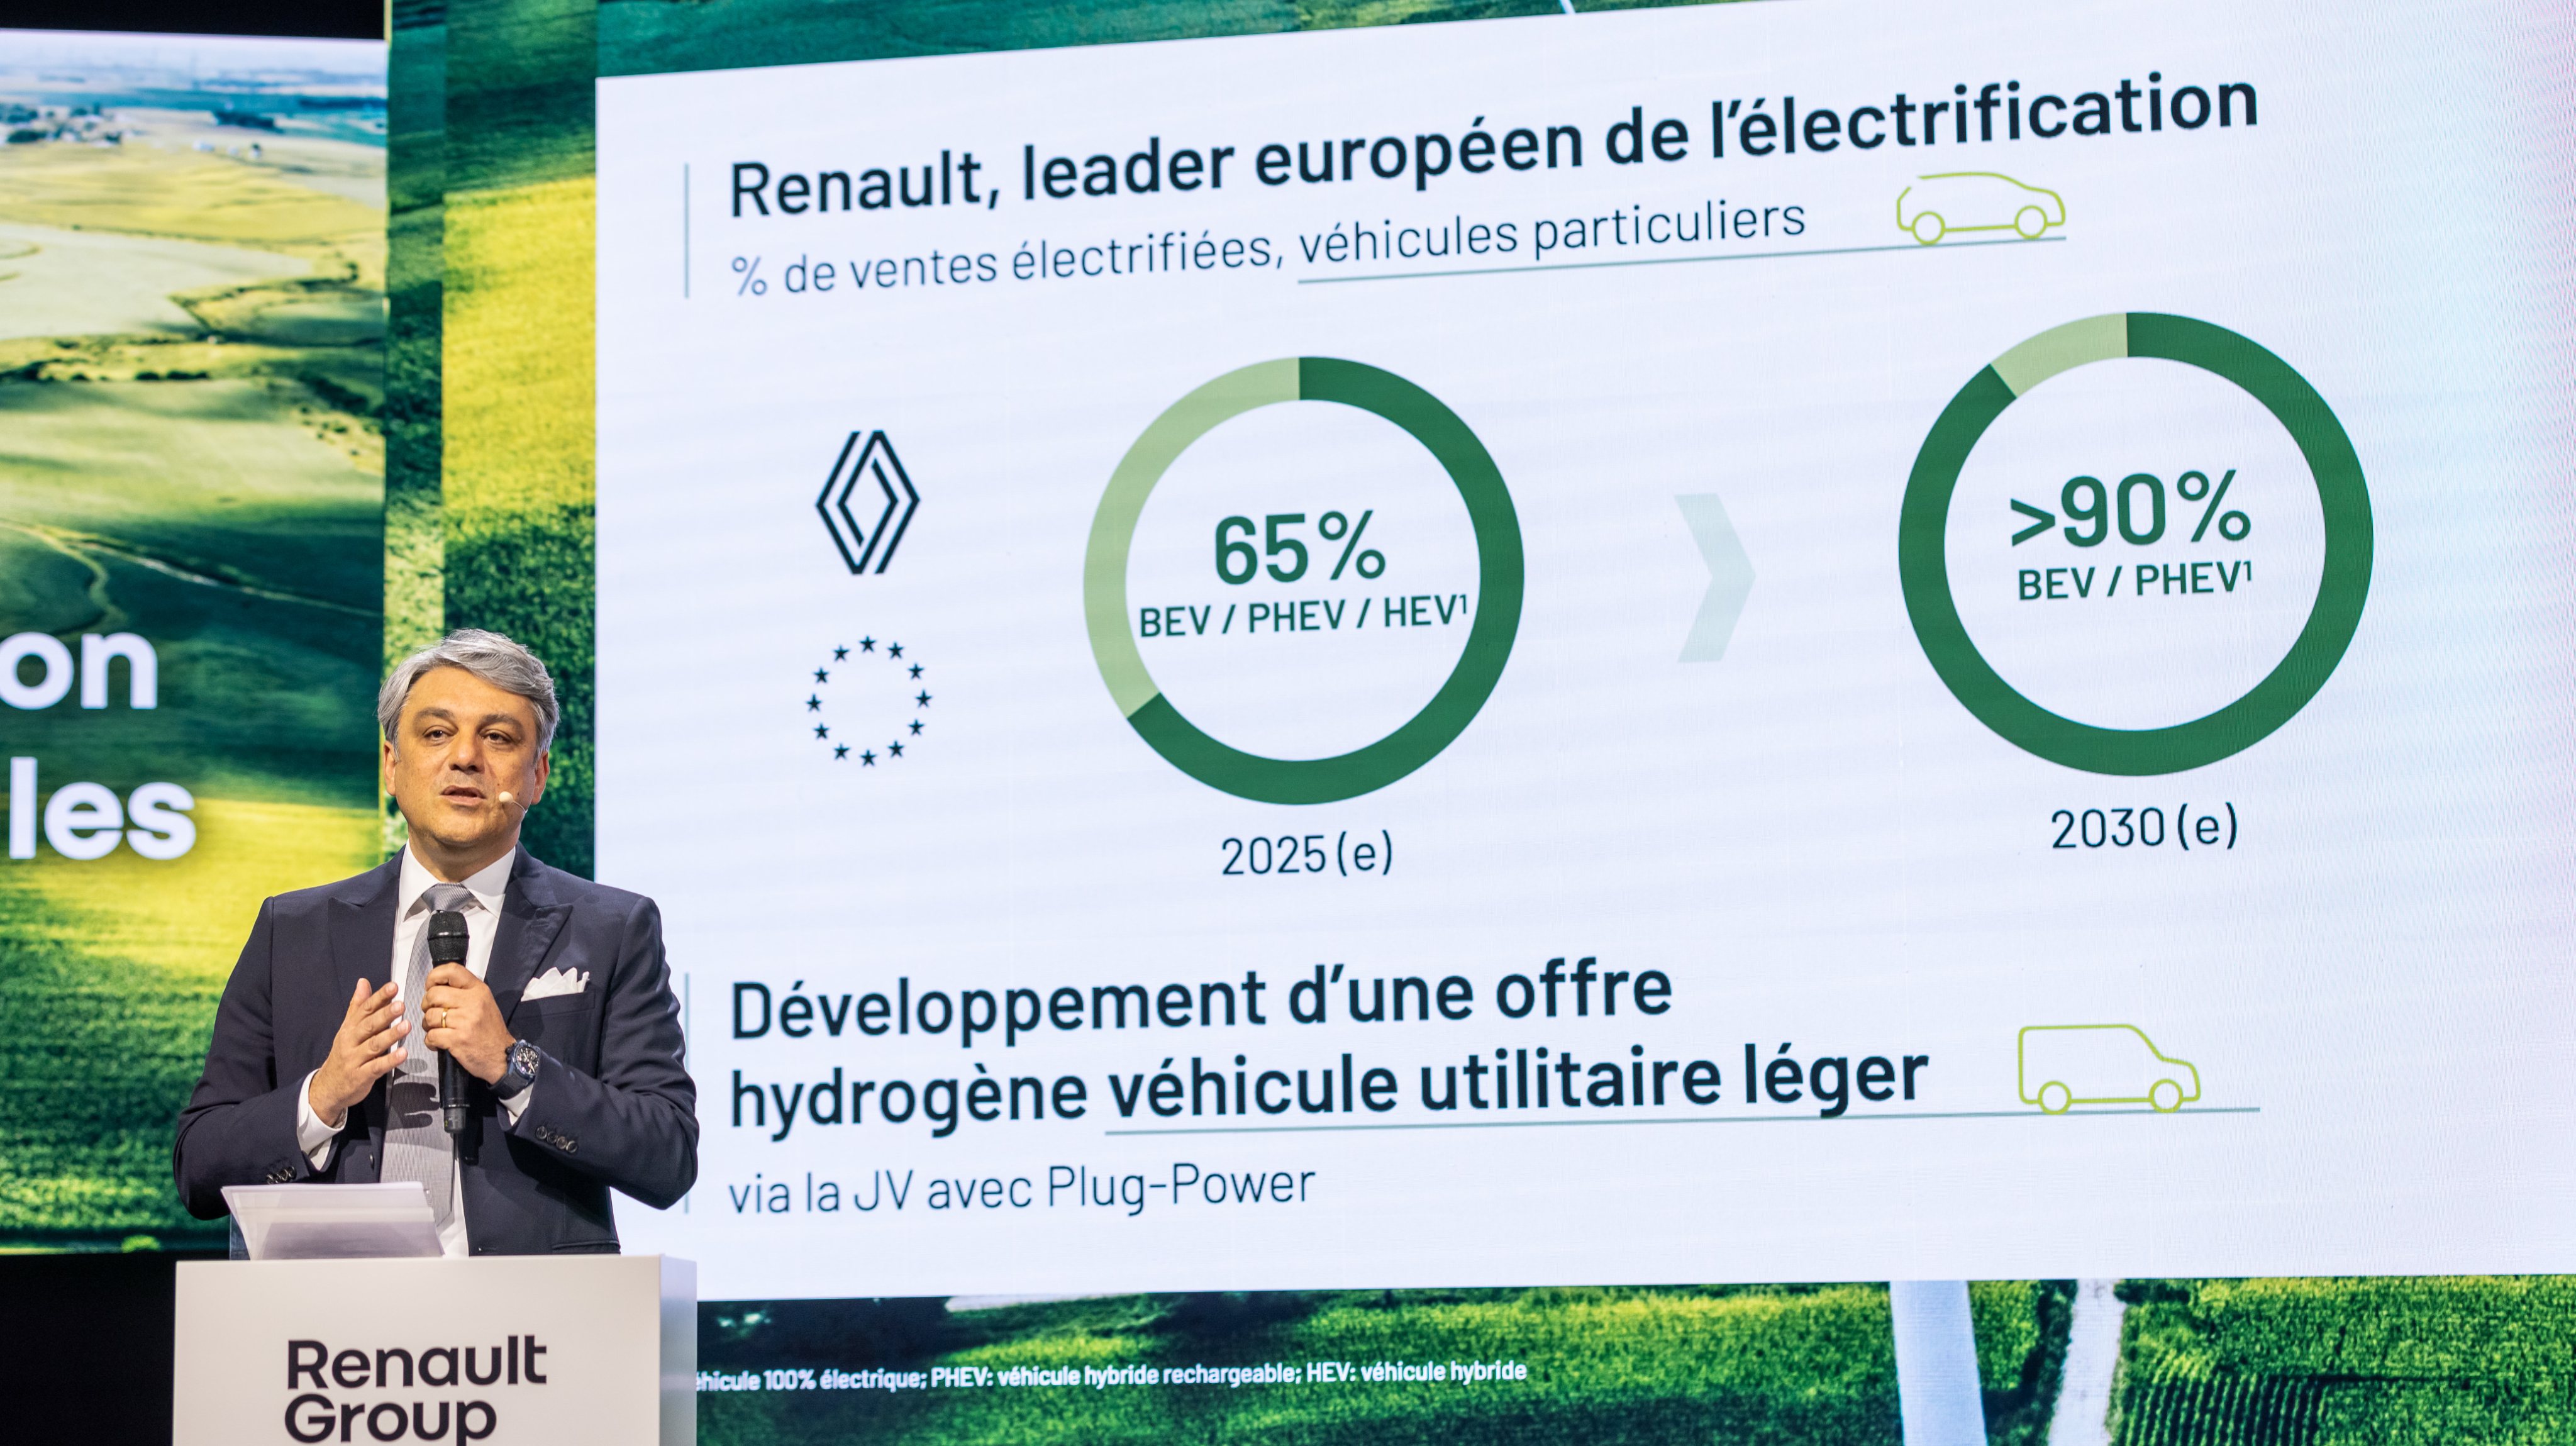 O diesel está fora da equação, assumiu Luca de Meo na apresentação da estratégia ambiental e social do Grupo Renault. Na Europa, os veículos electrificados devem representar 65% das vendas até 2025 e 90% em 2030